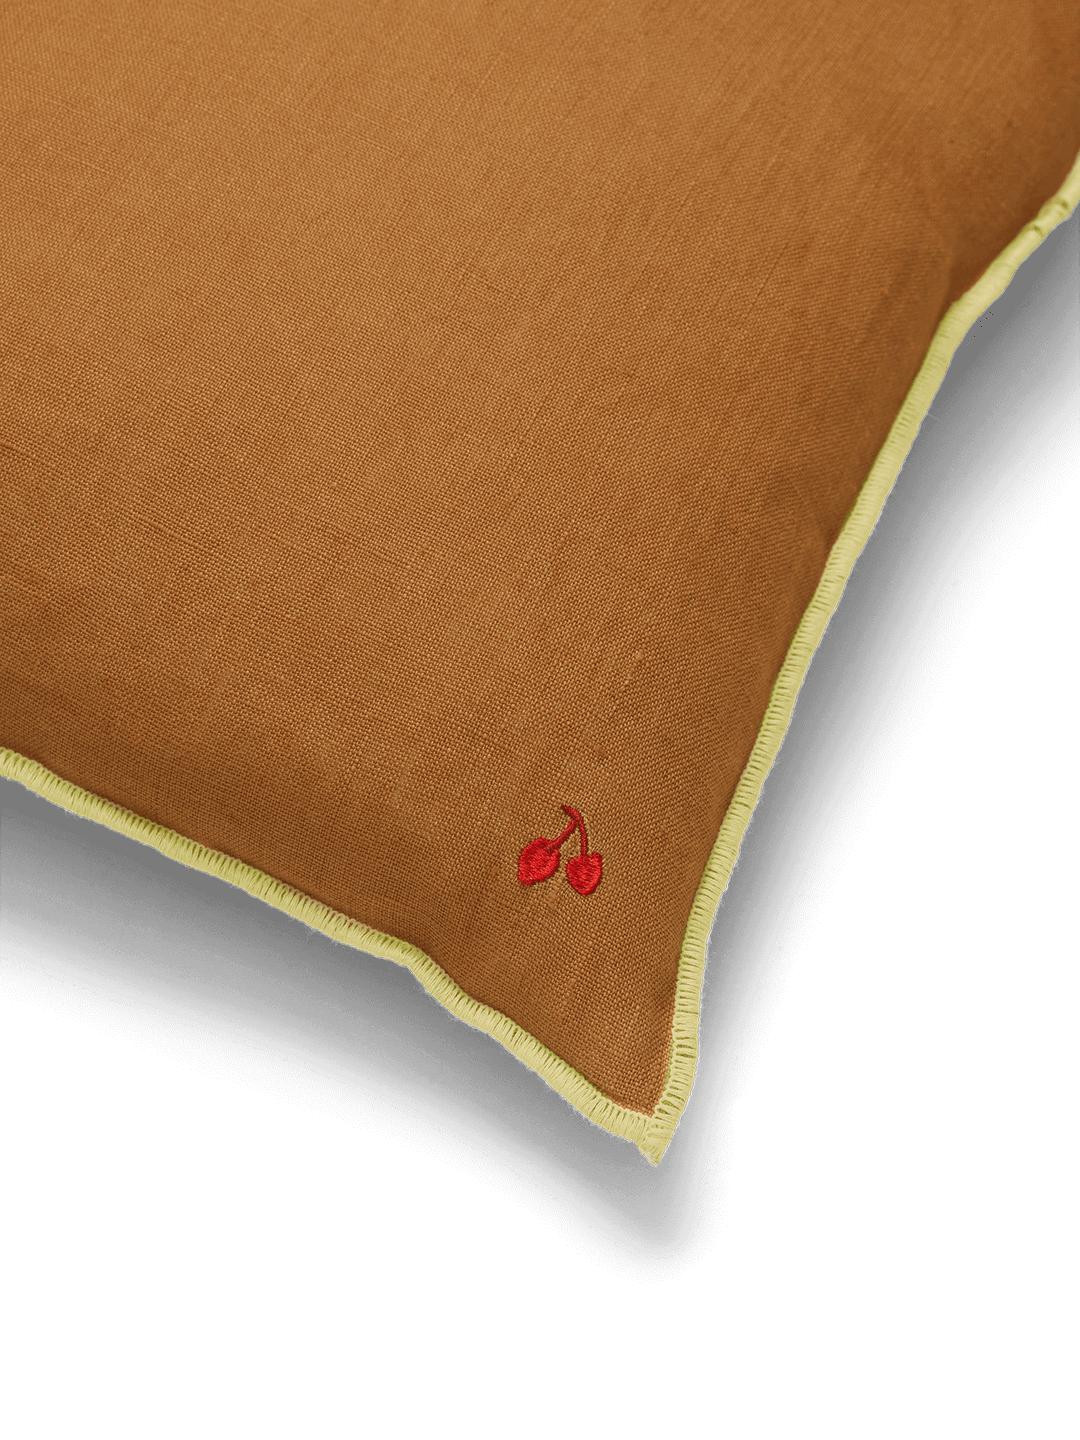 Ferm Living Contrast Linen Pillow, Sugar Kelp